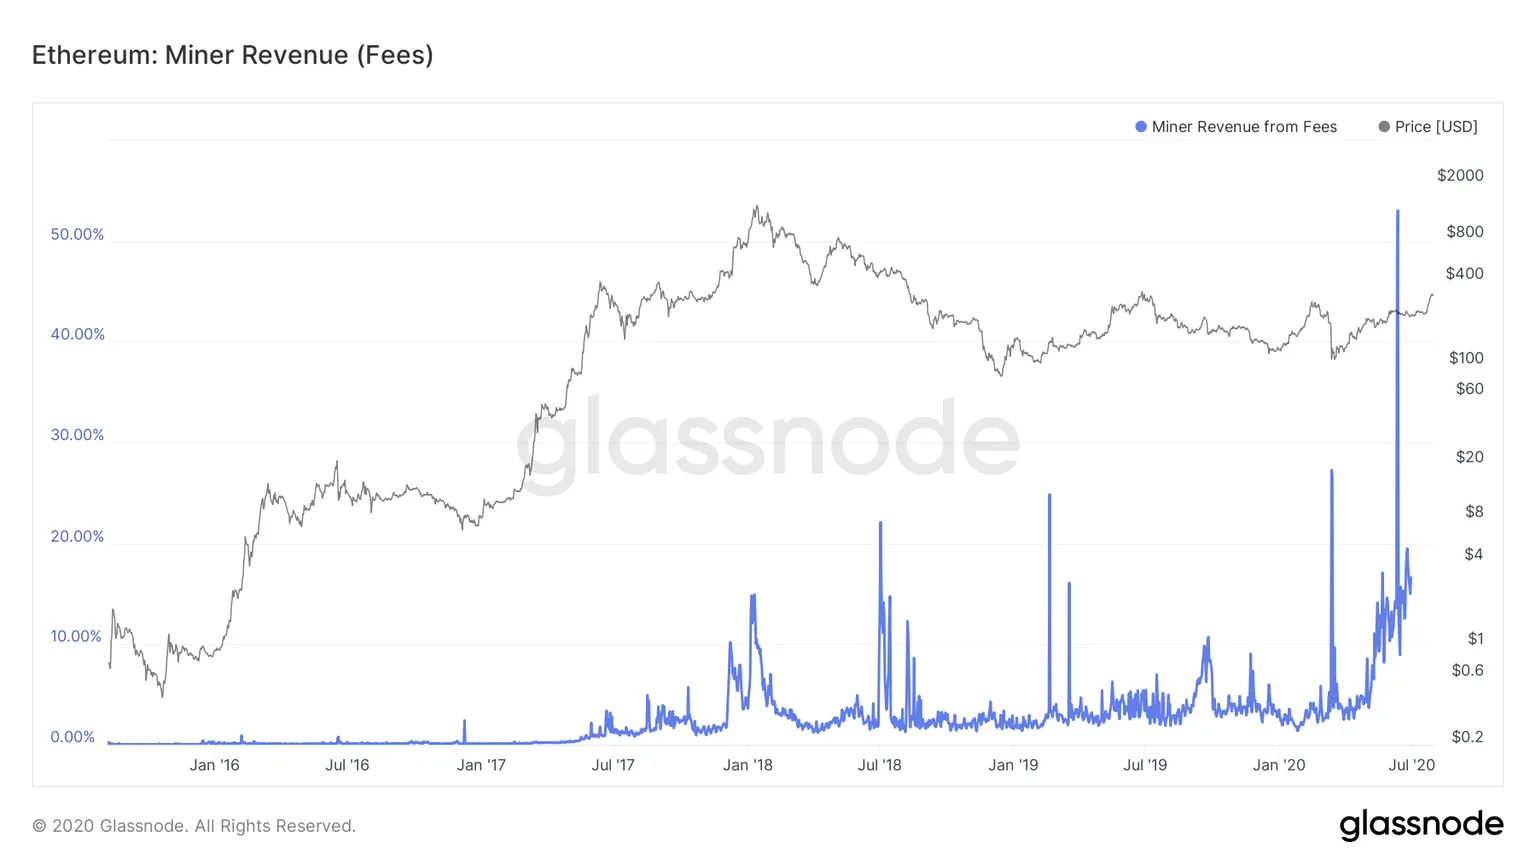 Ethereum miner revenue. Source: Glassnode